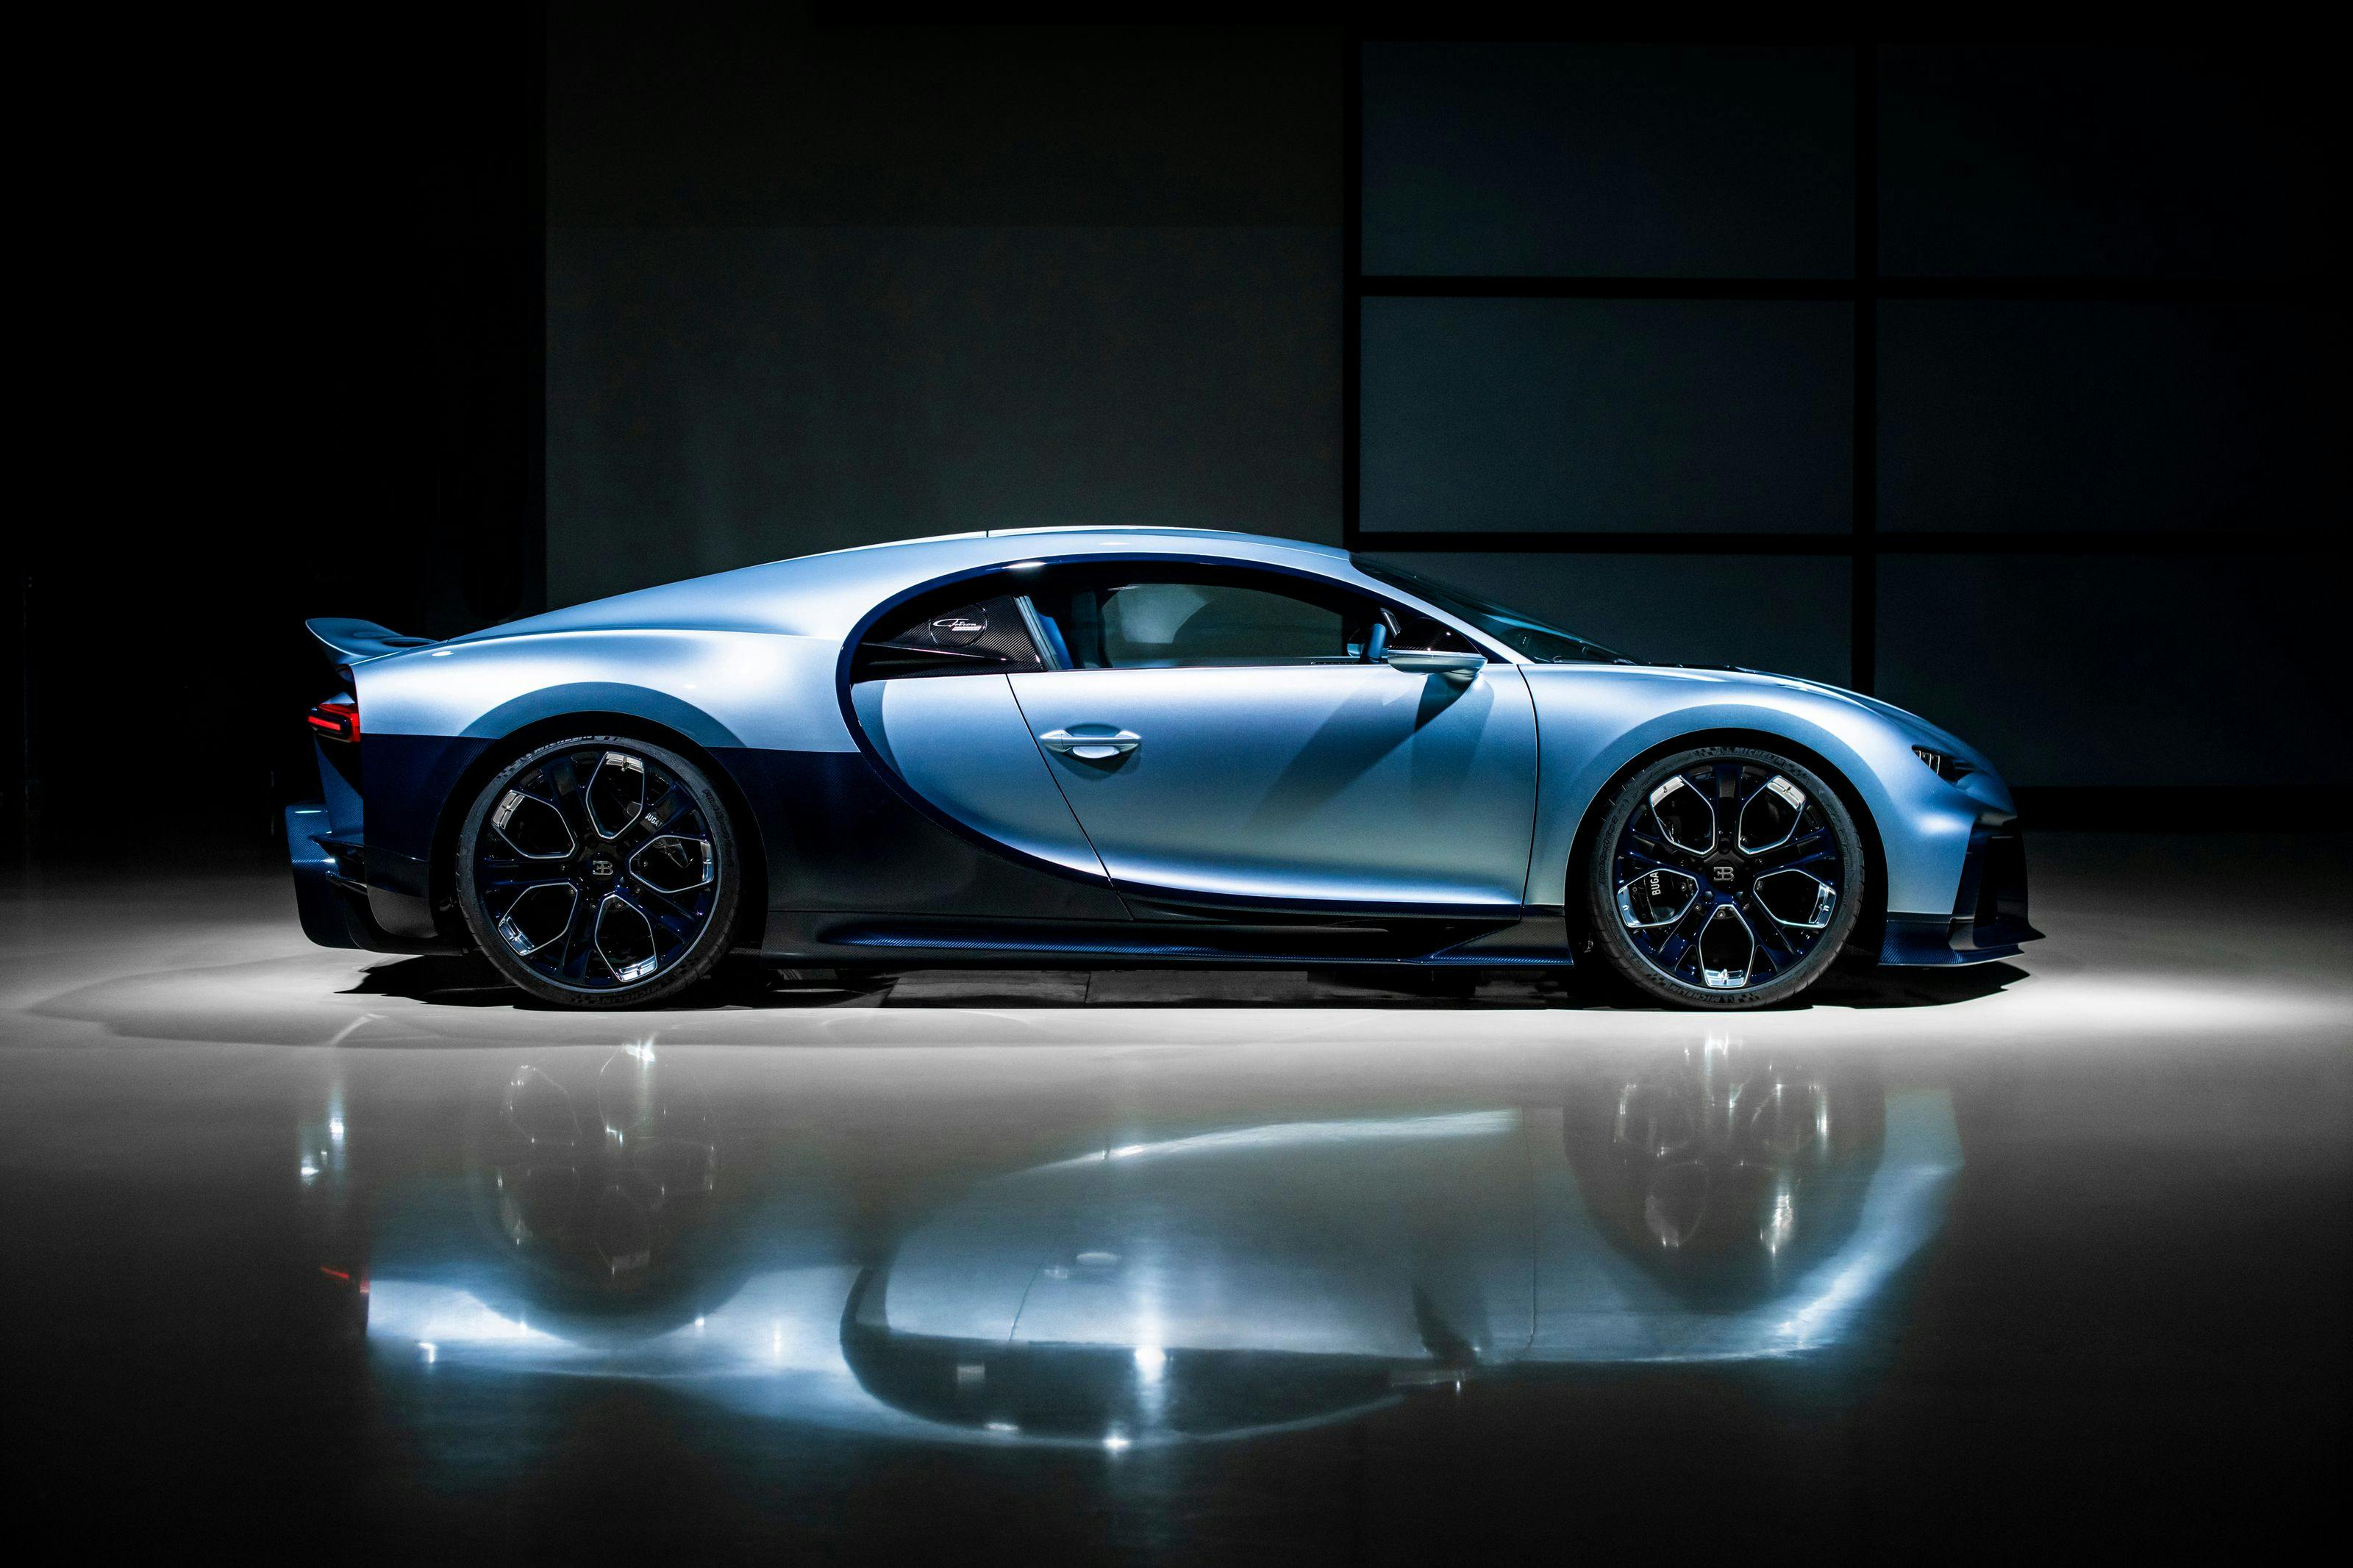 La Bugatti Chiron Profilée : un joyau automobile rare